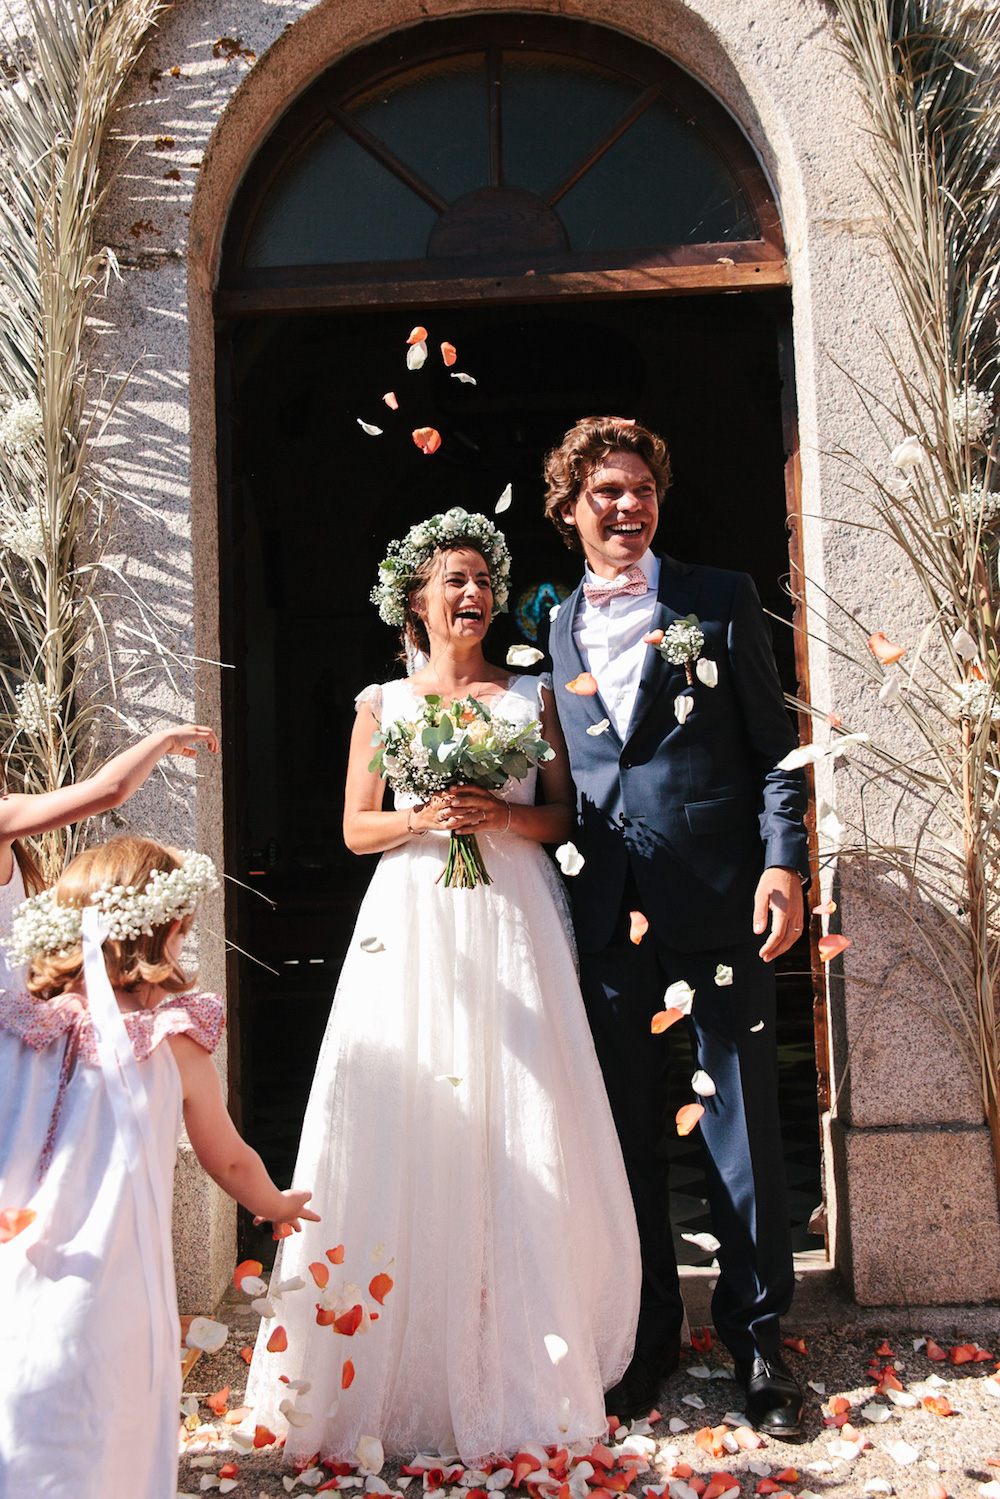 Un mariage en Corse les pieds dans l'eau - Aurélie + Jérôme - Blog Mariage Madame C